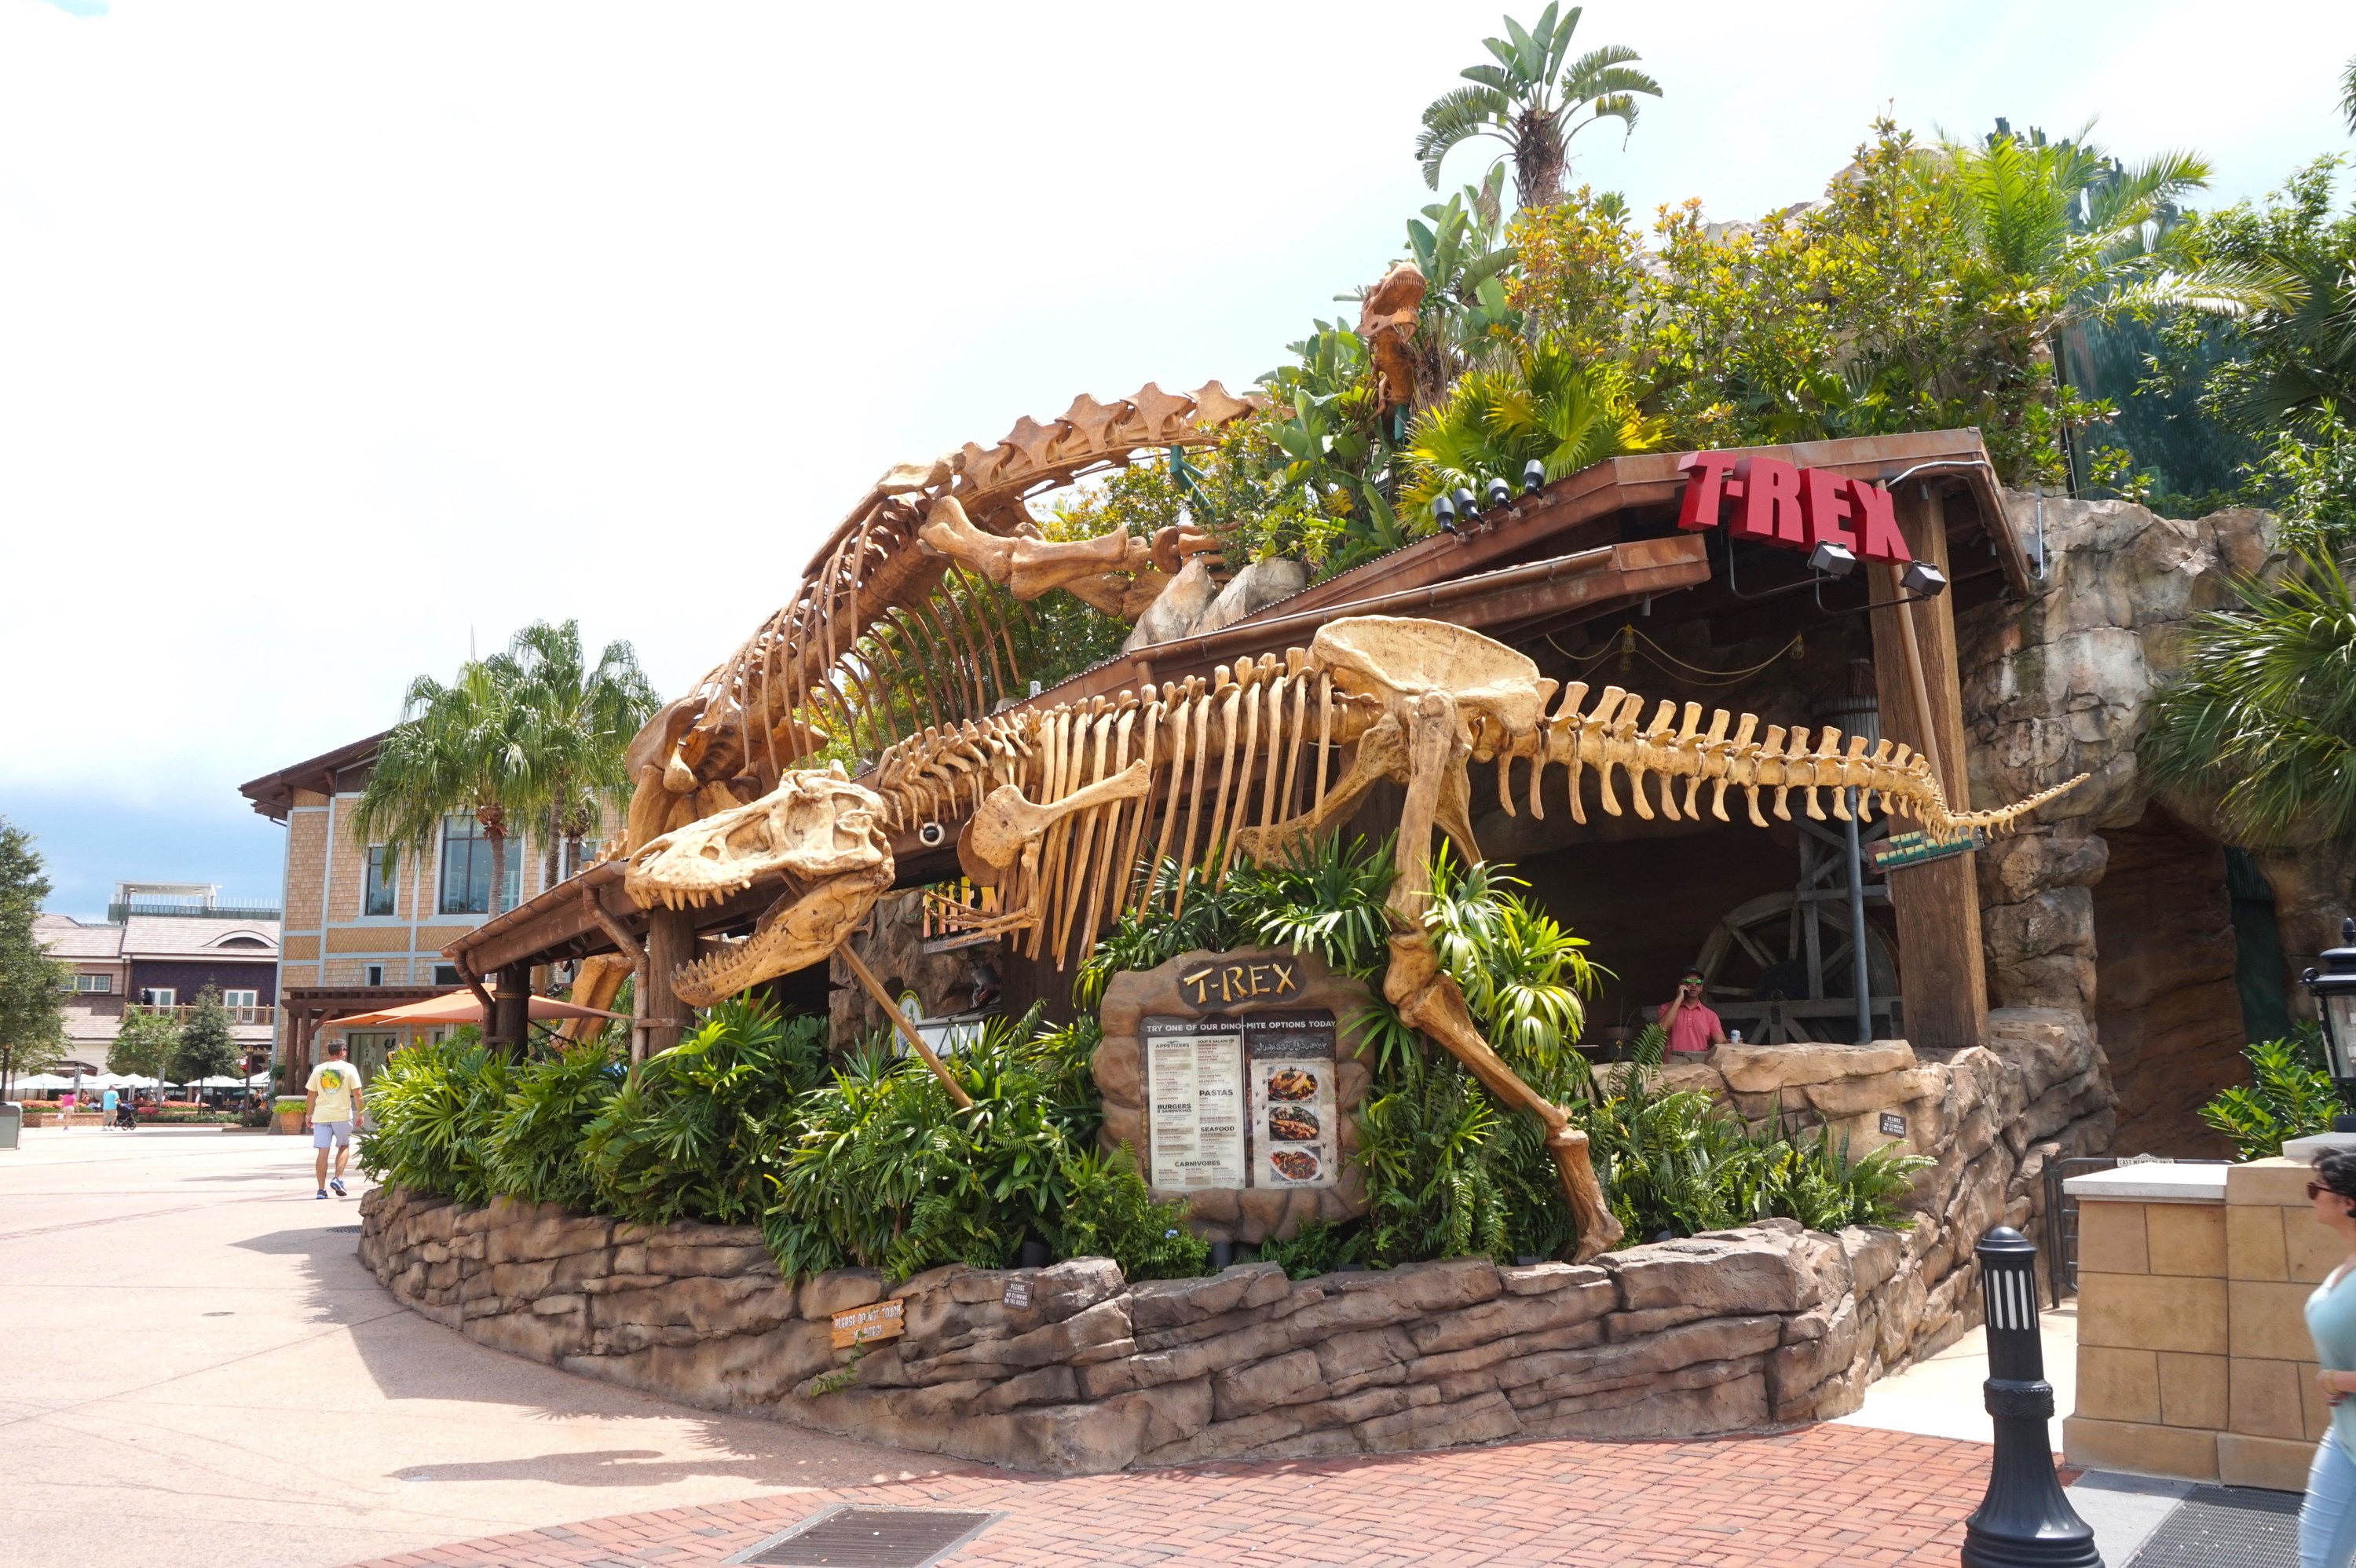 咖啡馆有一个很大的霸王龙骨骼外的复制品